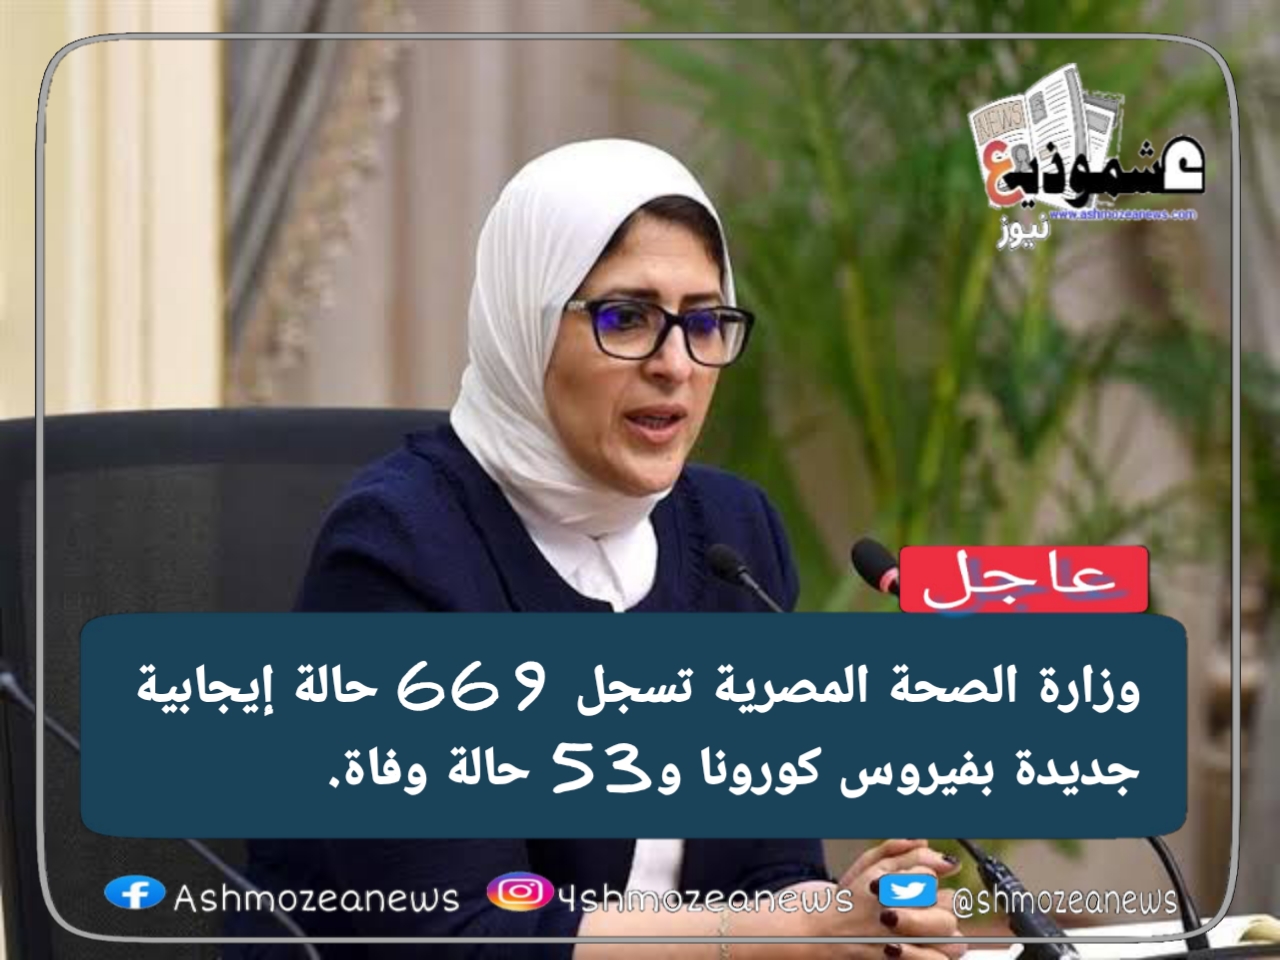 وزارة الصحة المصرية تسجل 669 حالة إيجابية جديدة بفيروس كورونا و53 حالة وفاة.